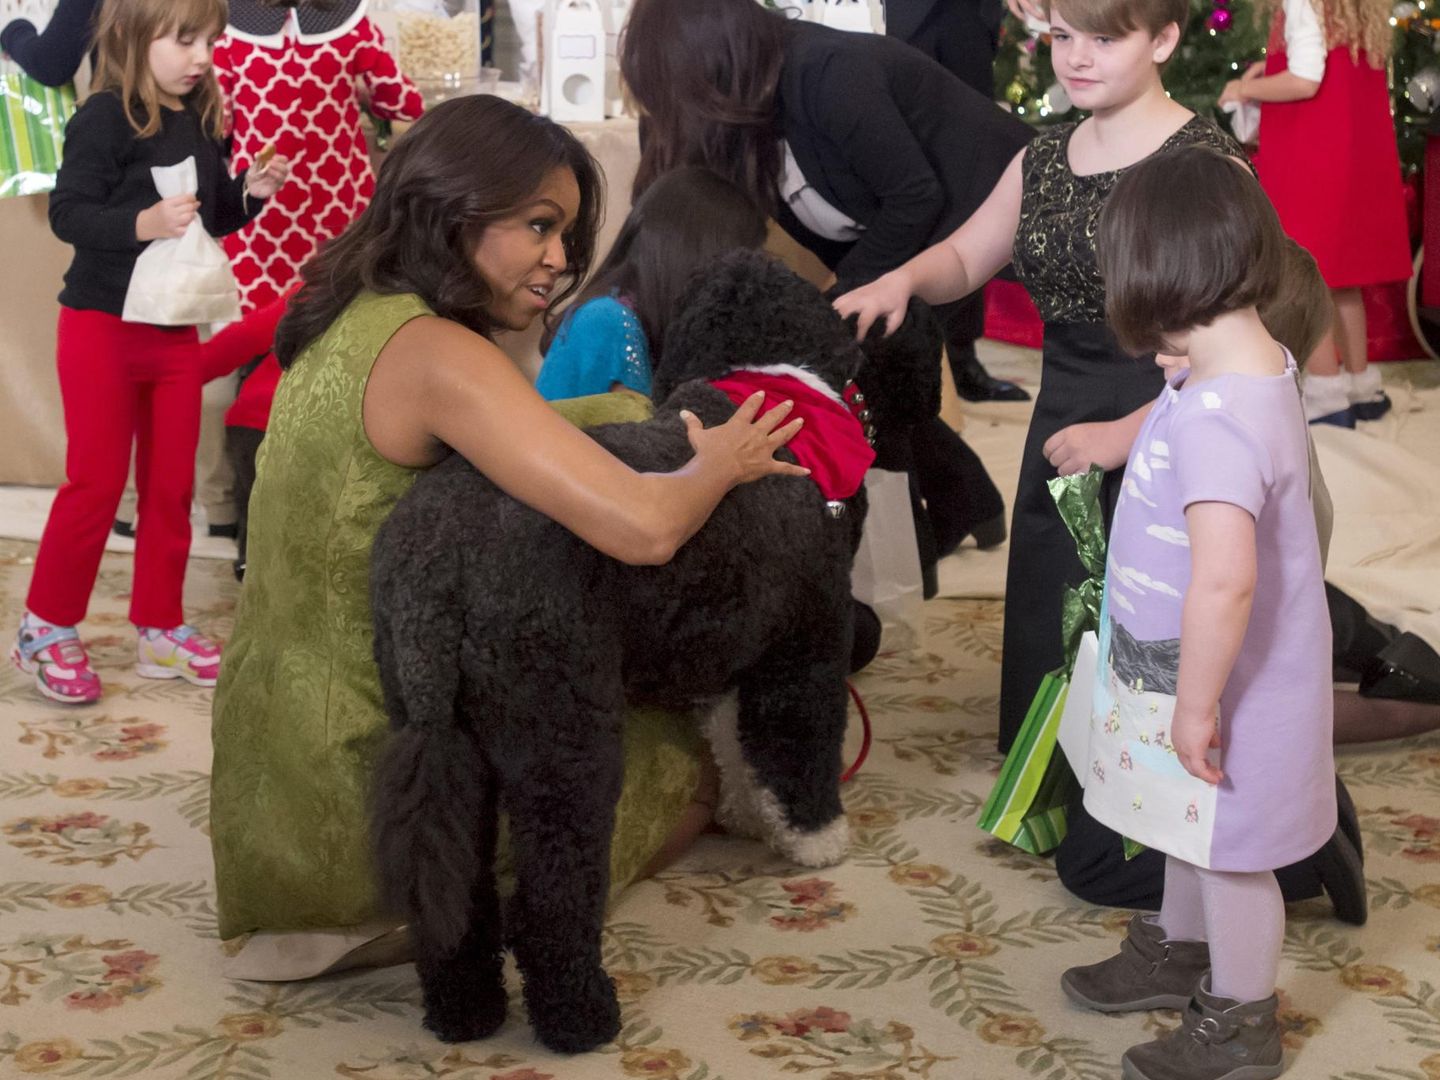 Los perros de la familia Obama eran muy populares. Foto EFE